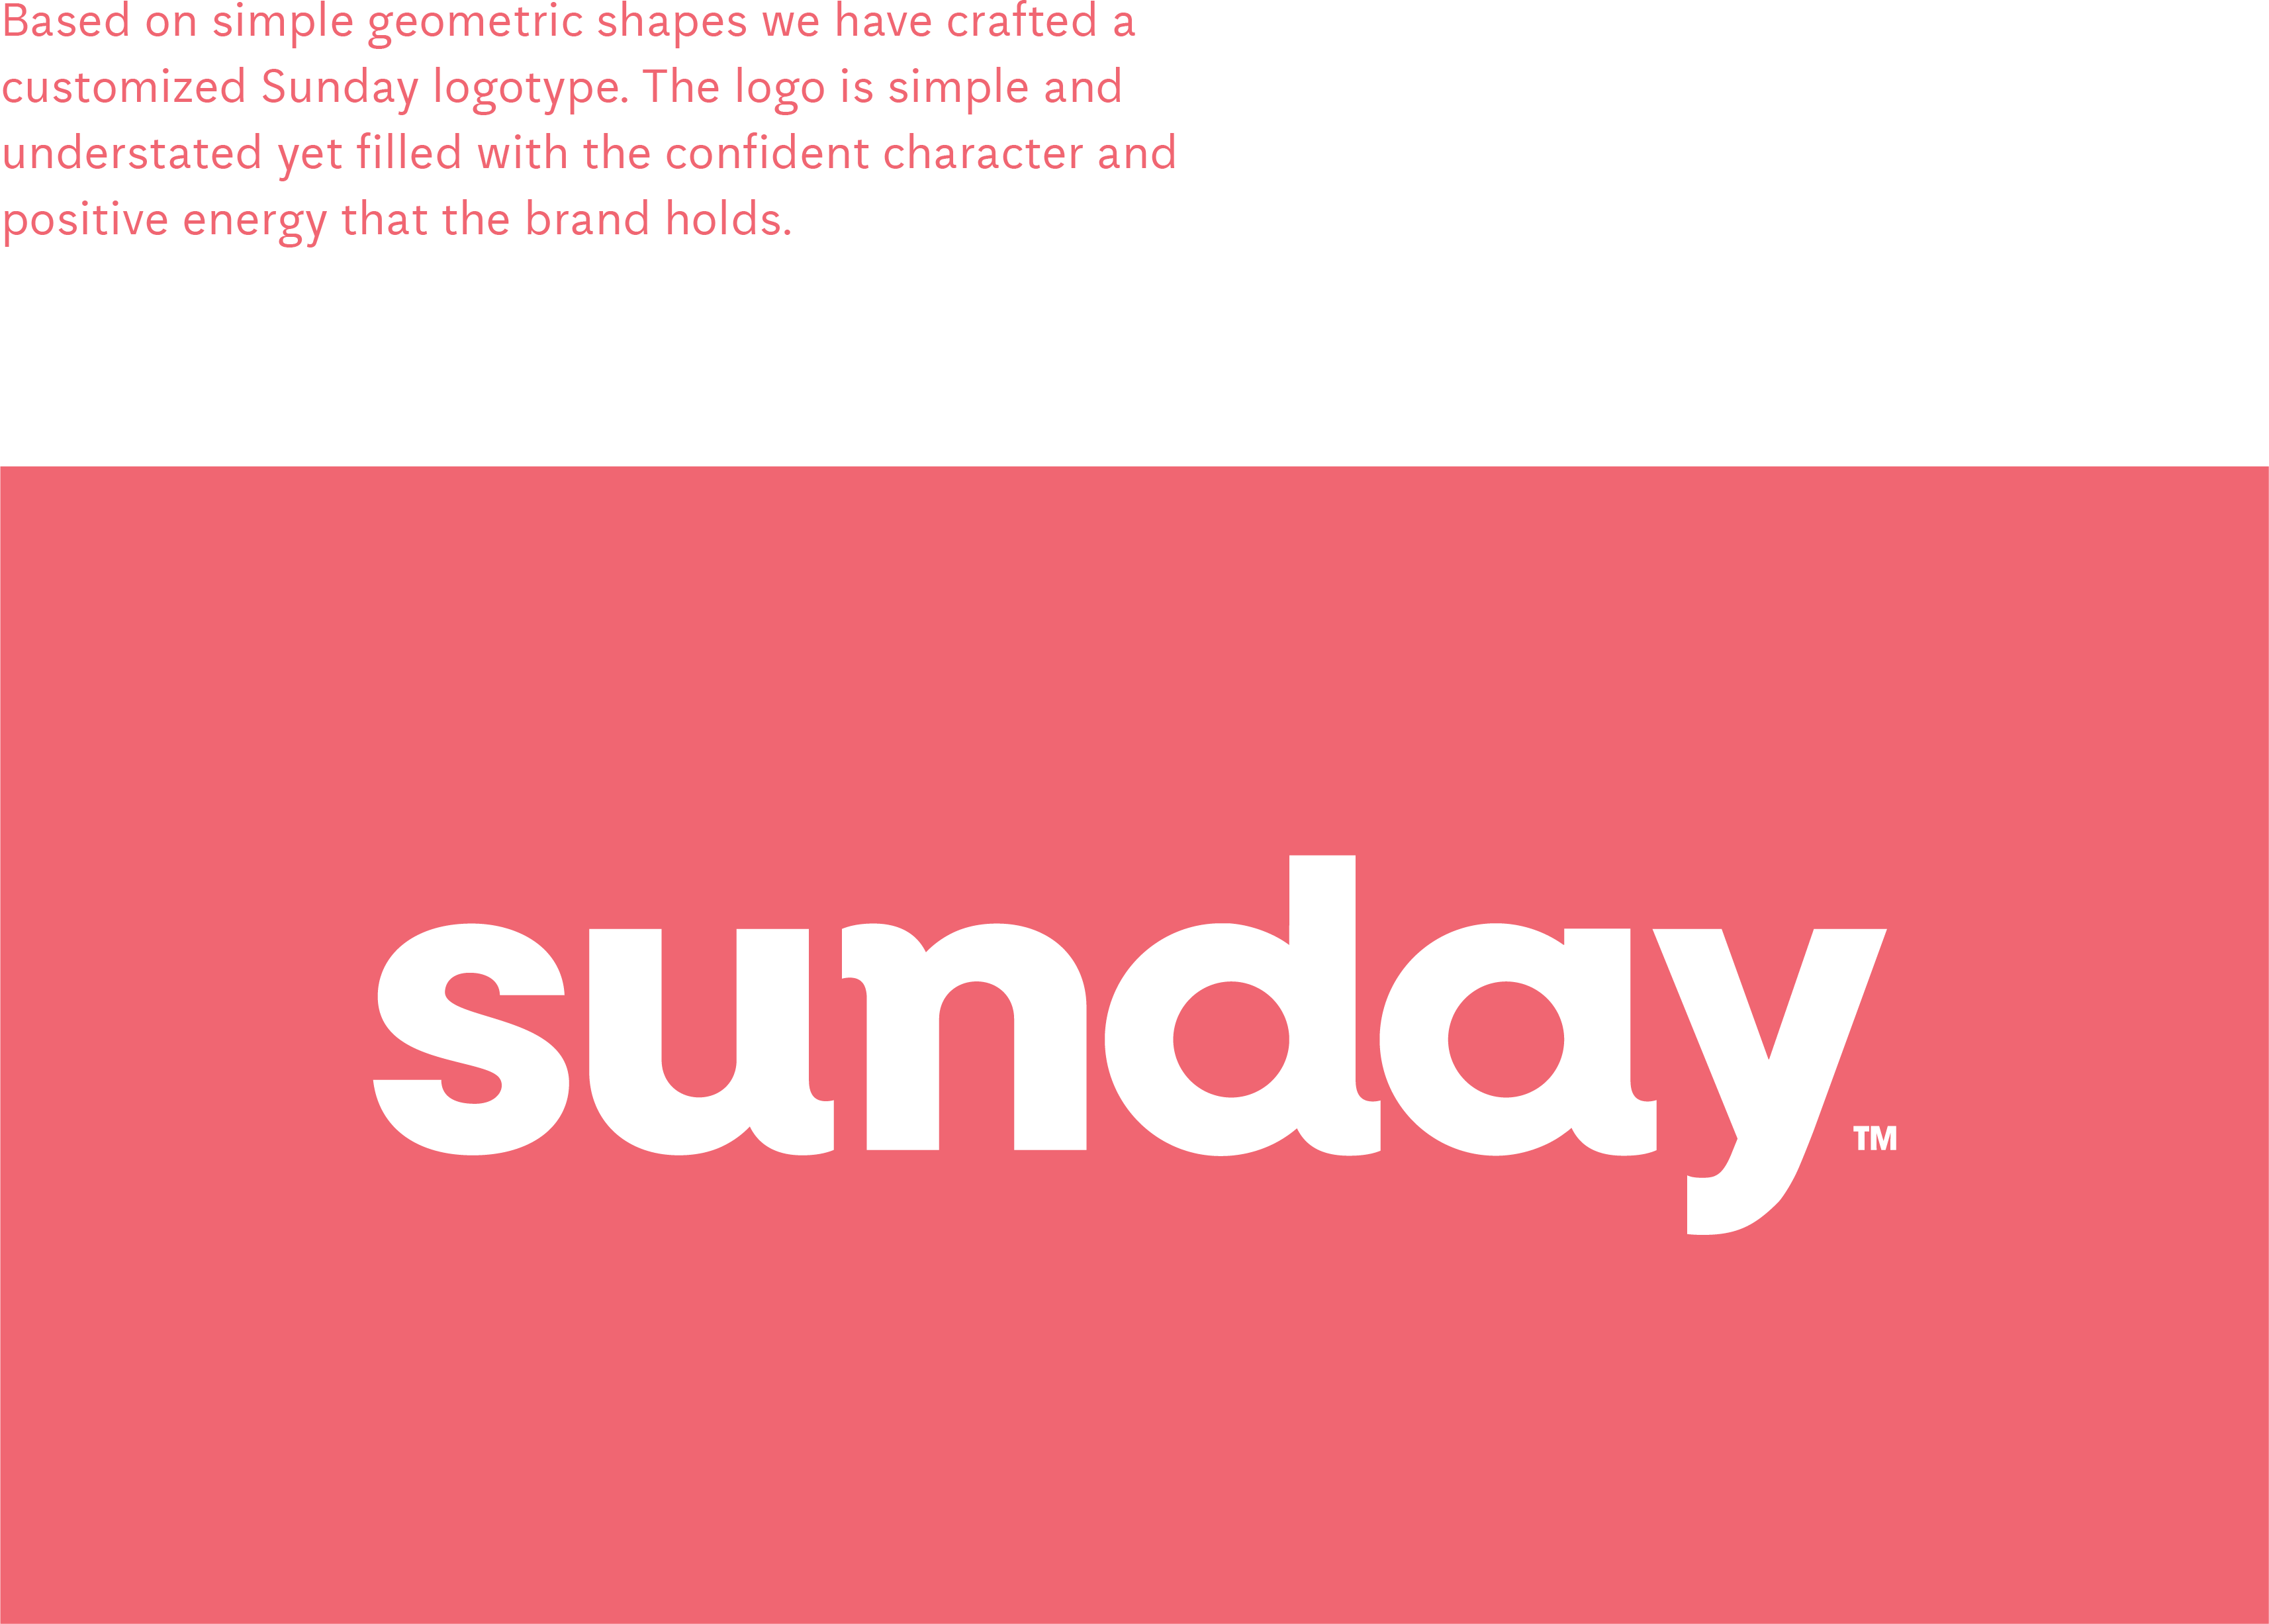 Sunday Logo - Sunday